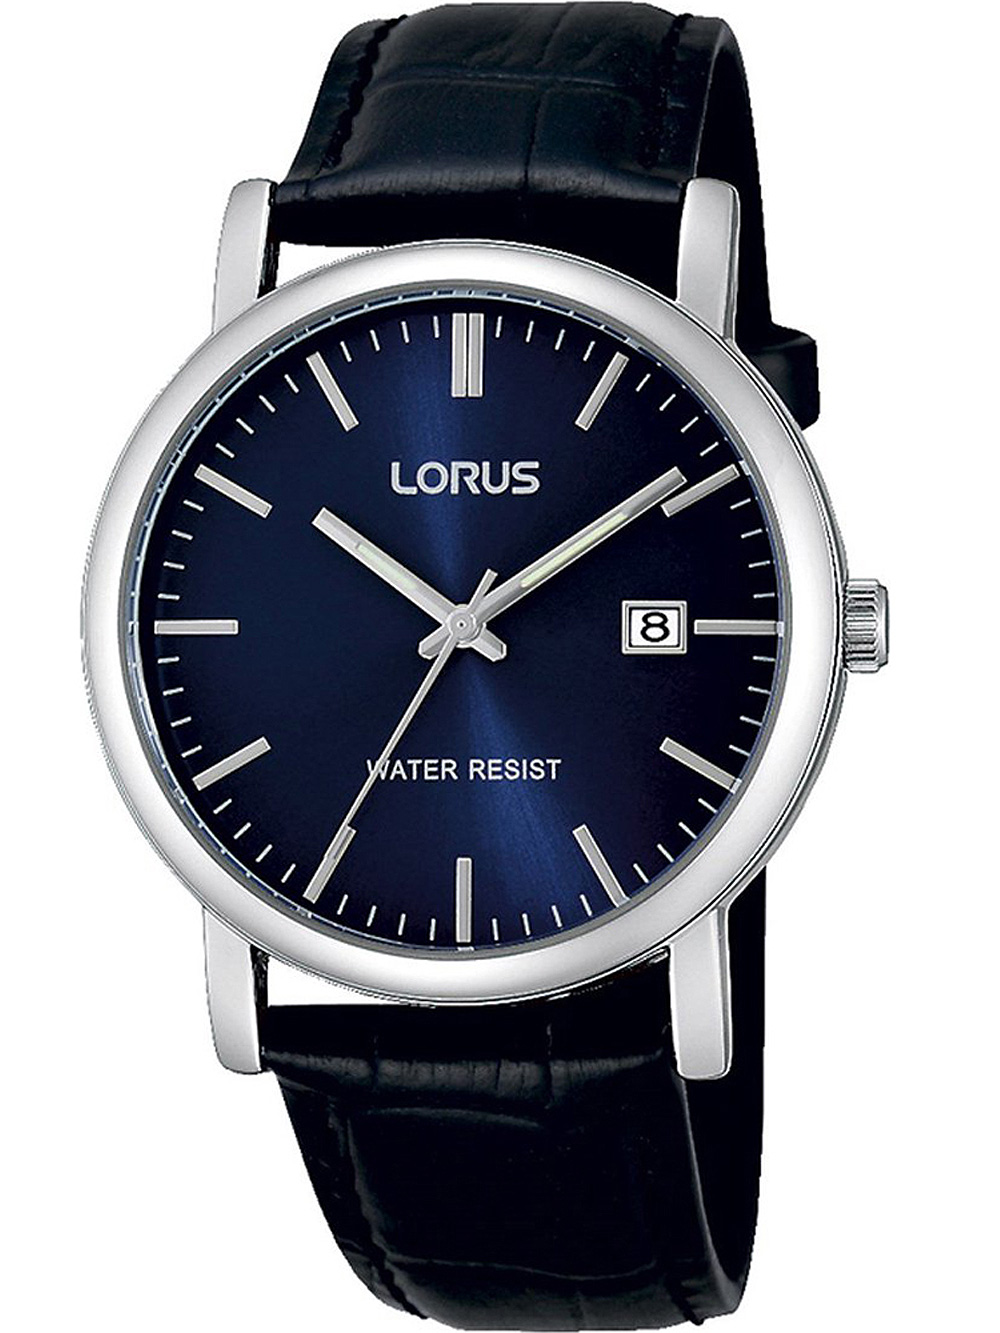 Uhren: LORUS sicher günstig, kaufen! & portofrei